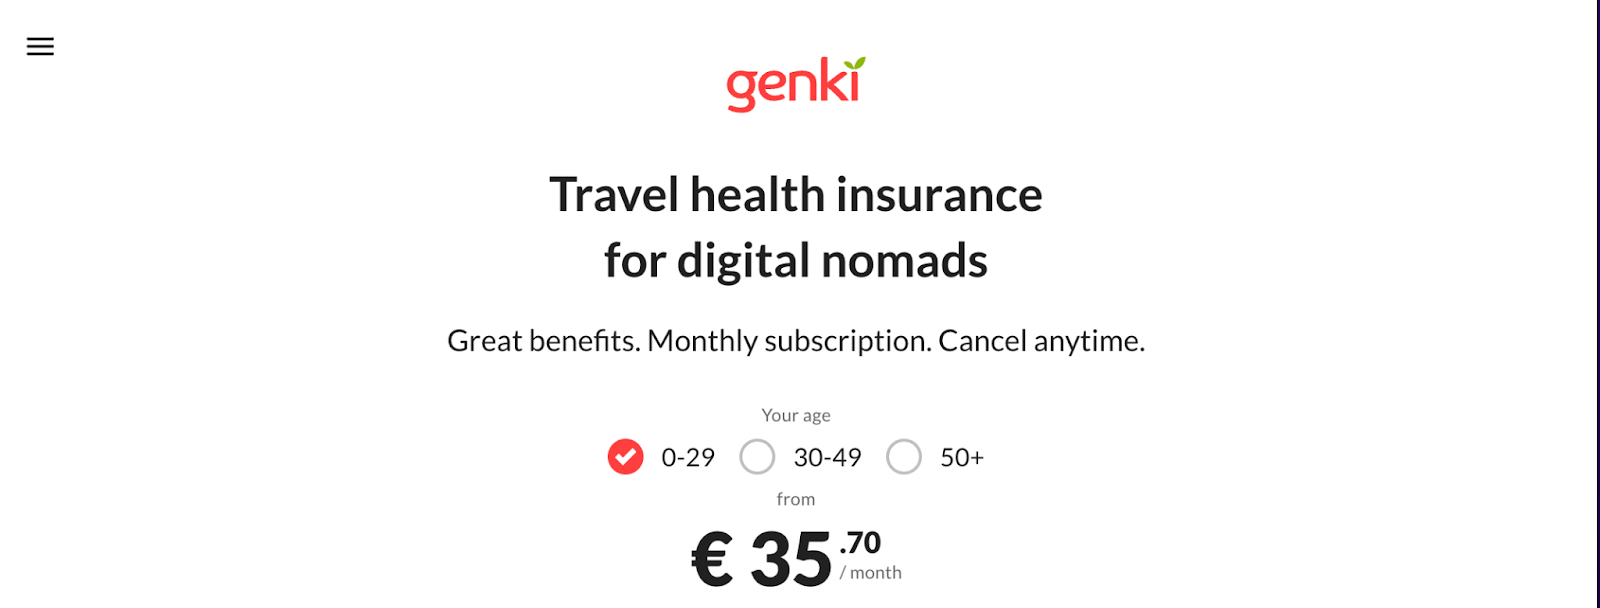 genki assicurazione di viaggio per nomadi digitali